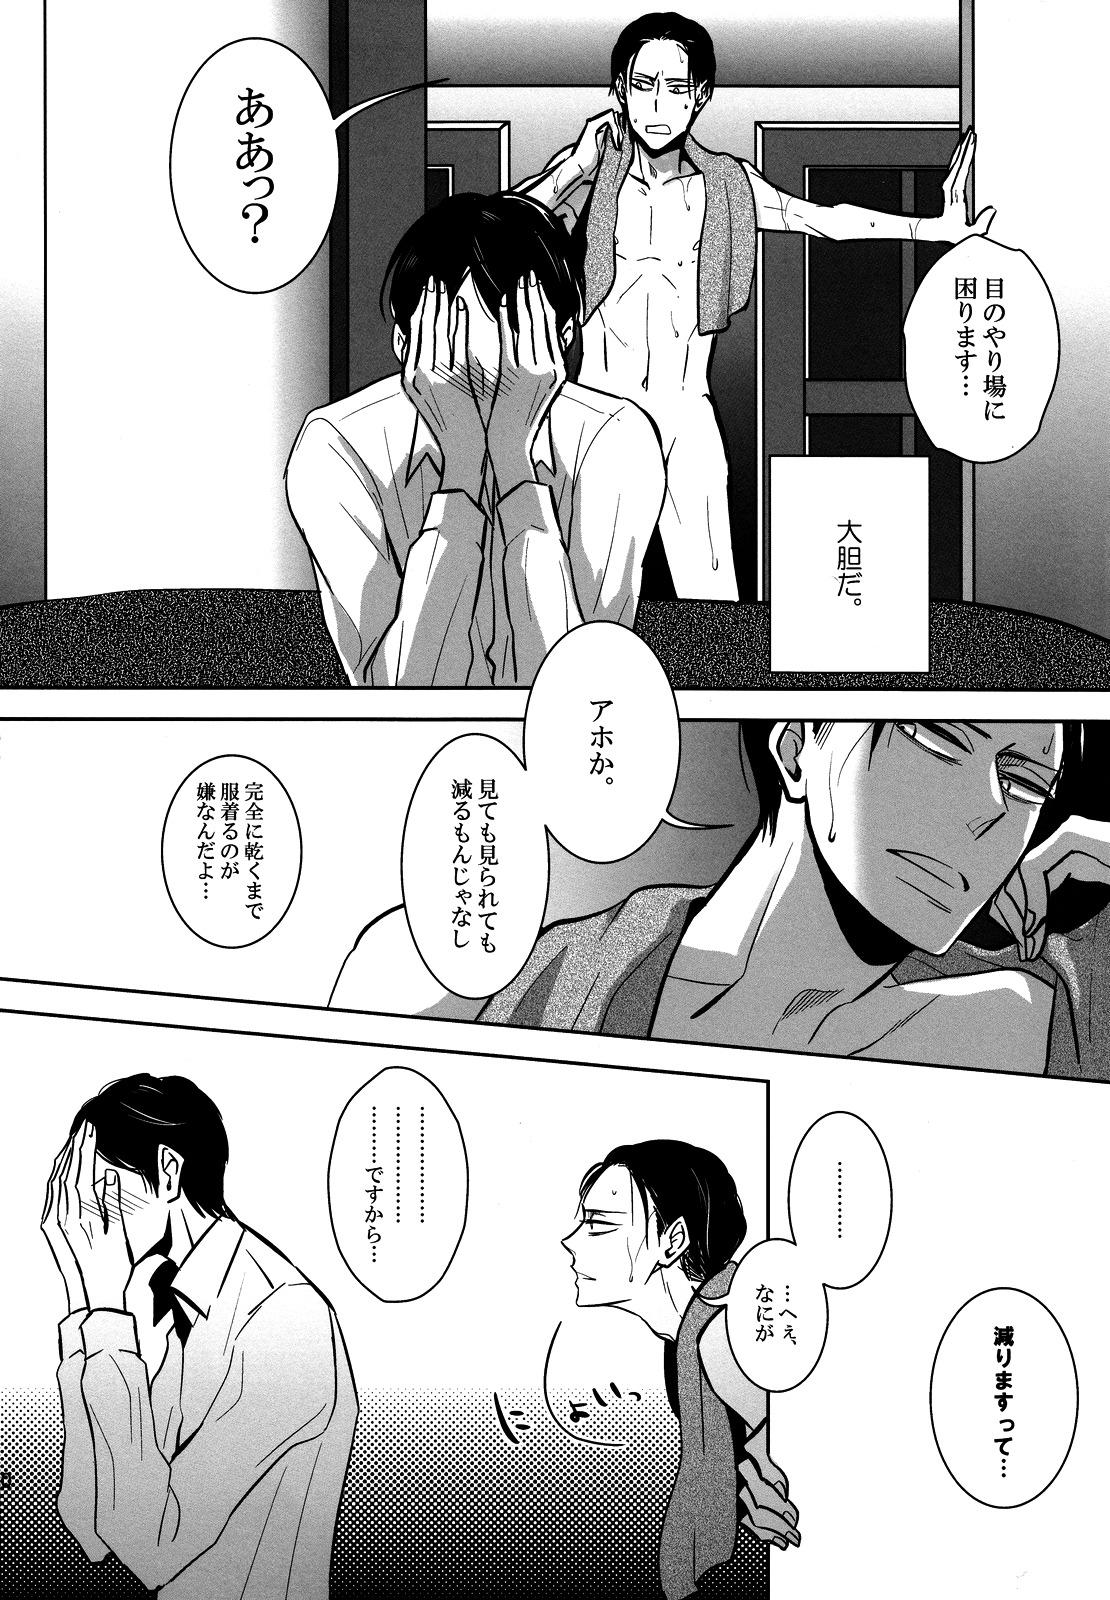 Ballbusting [acta (Akuta) Sou wa Ittemo Kokoro no Junbi ga. (Shingeki no Kyojin) - Shingeki no kyojin Hardcore Sex - Page 9